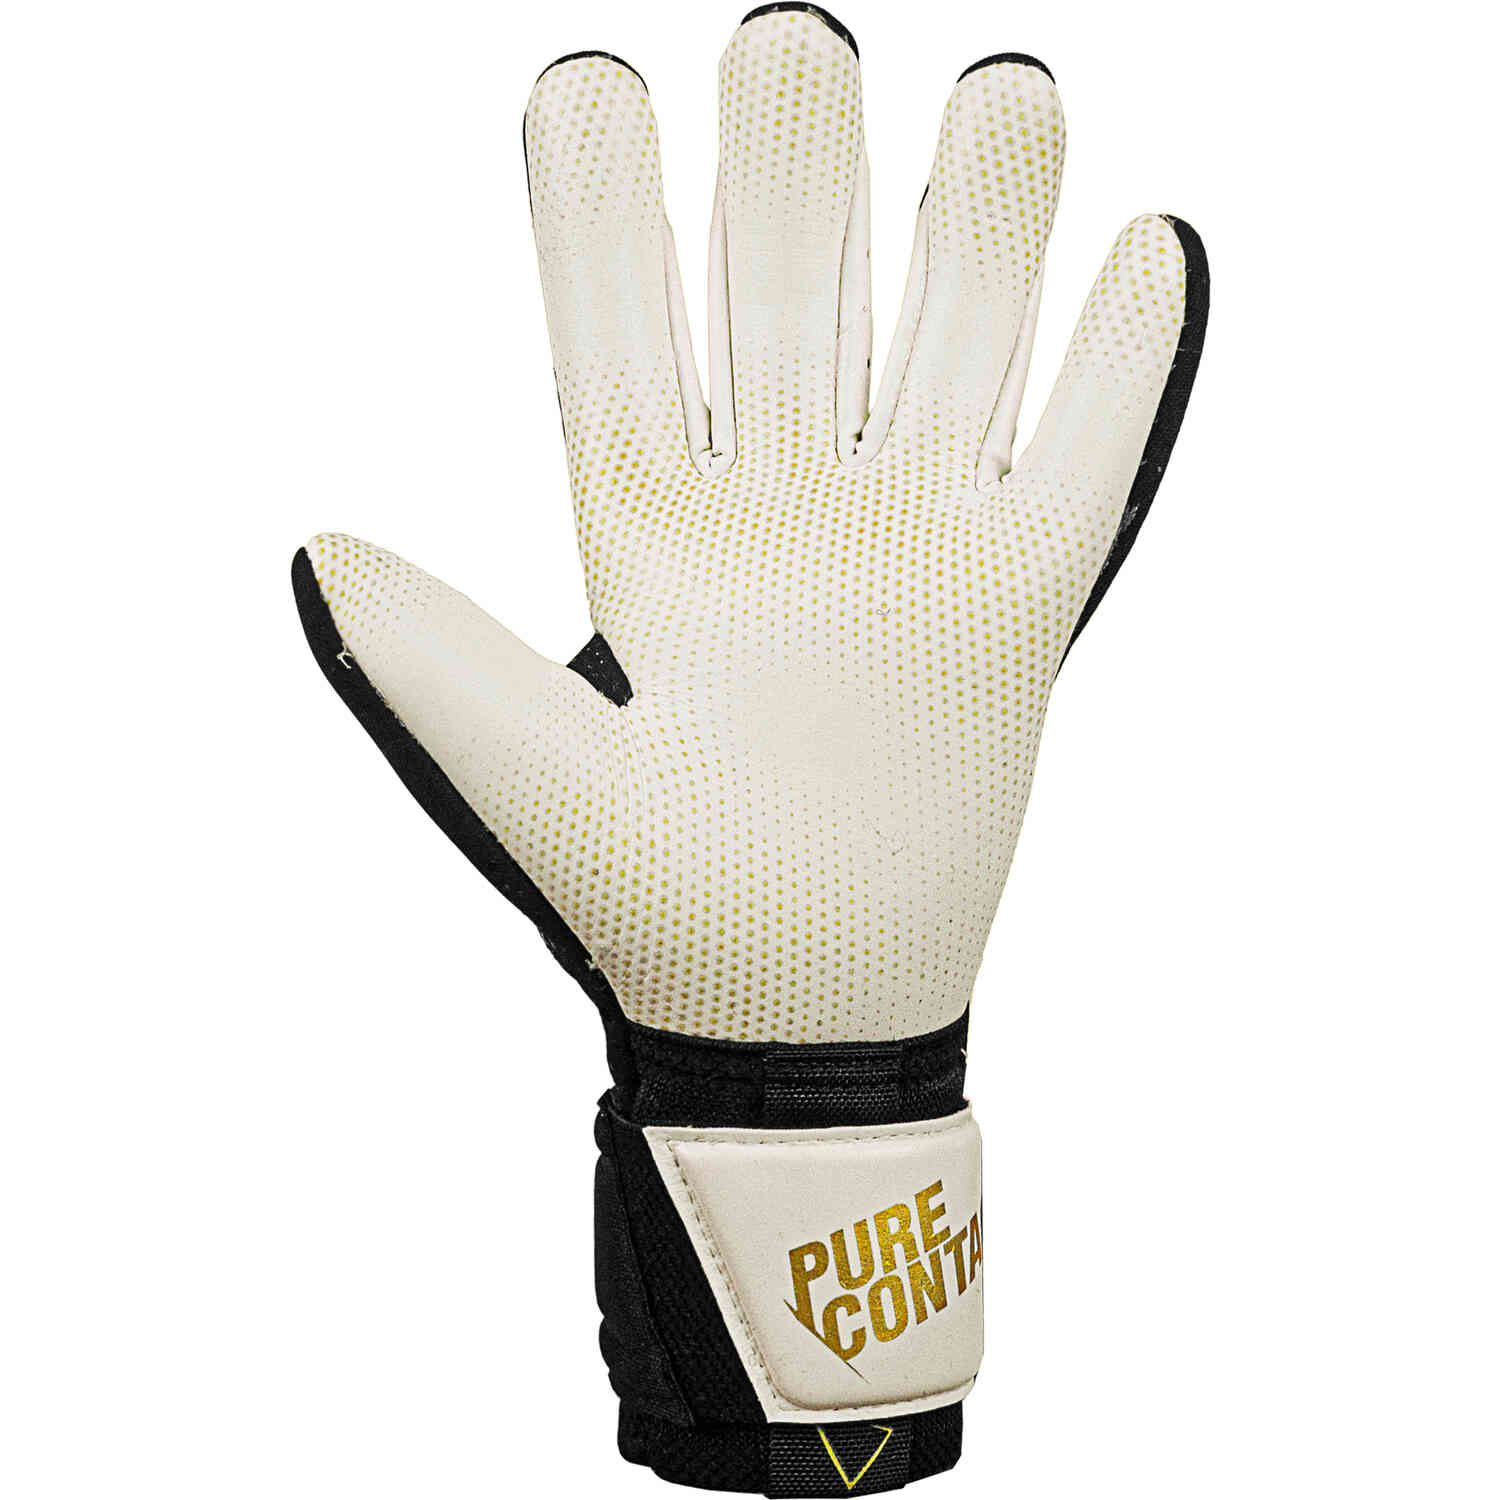 Reusch Pure Contact Gold X Glueprint Goalkeeper Gloves – Black & Gold